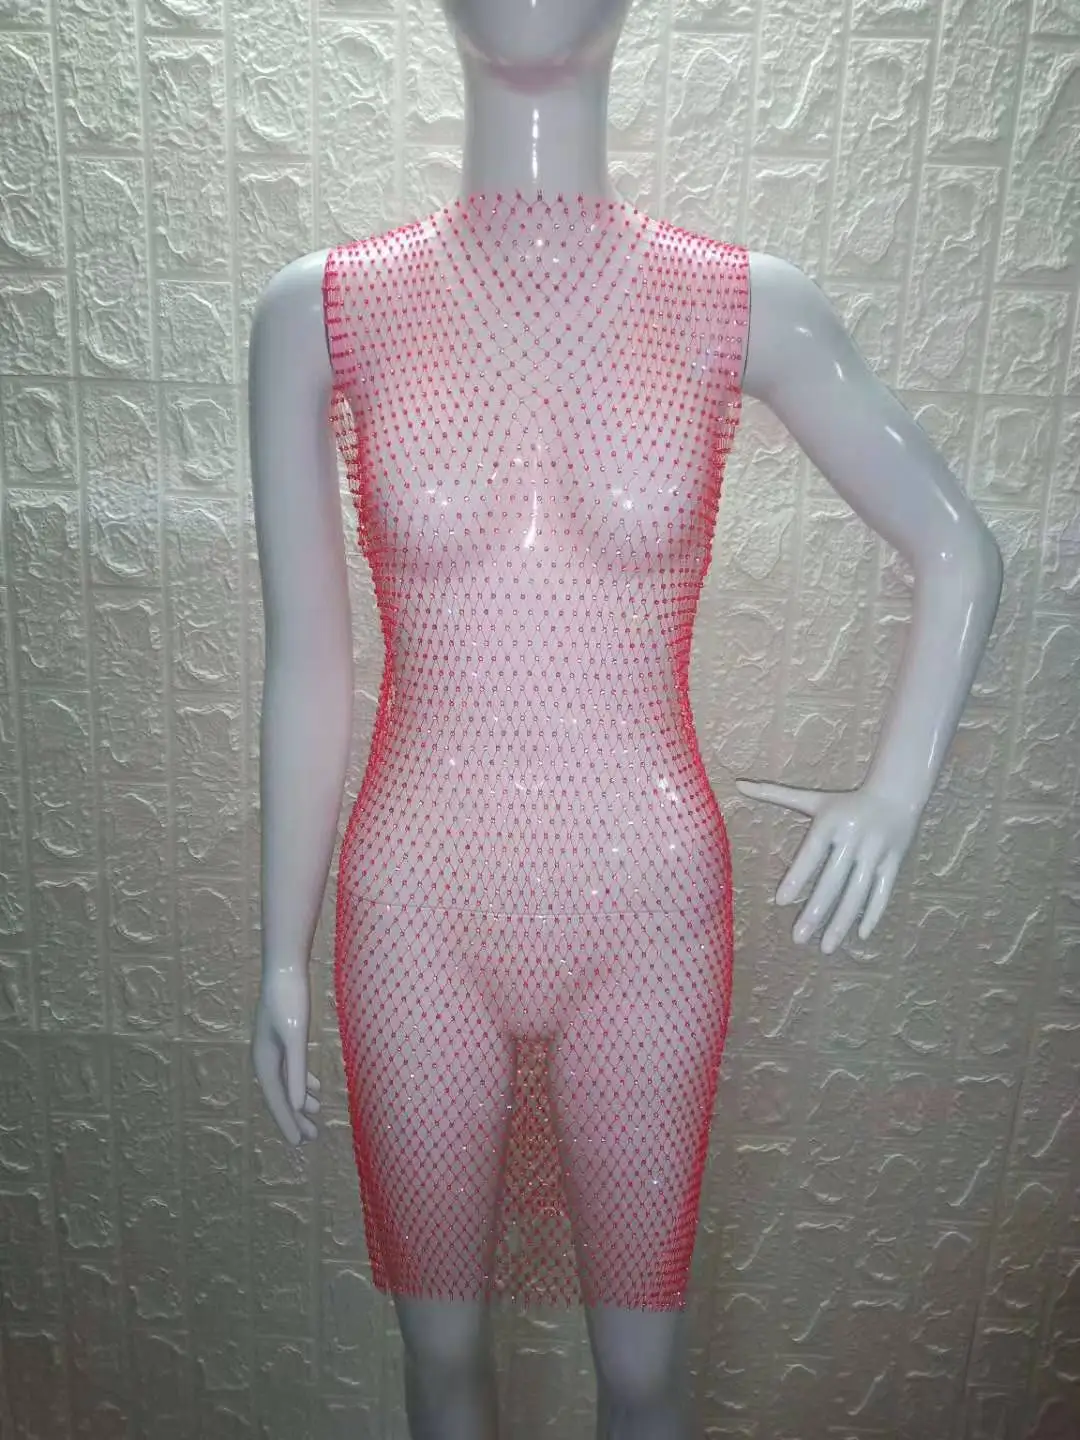 Bkning крючком пляжное бикини покрытие купальный костюм сексуальный прозрачный купальный костюм шикарное парео платье женская пляжная одежда - Color: neon pink